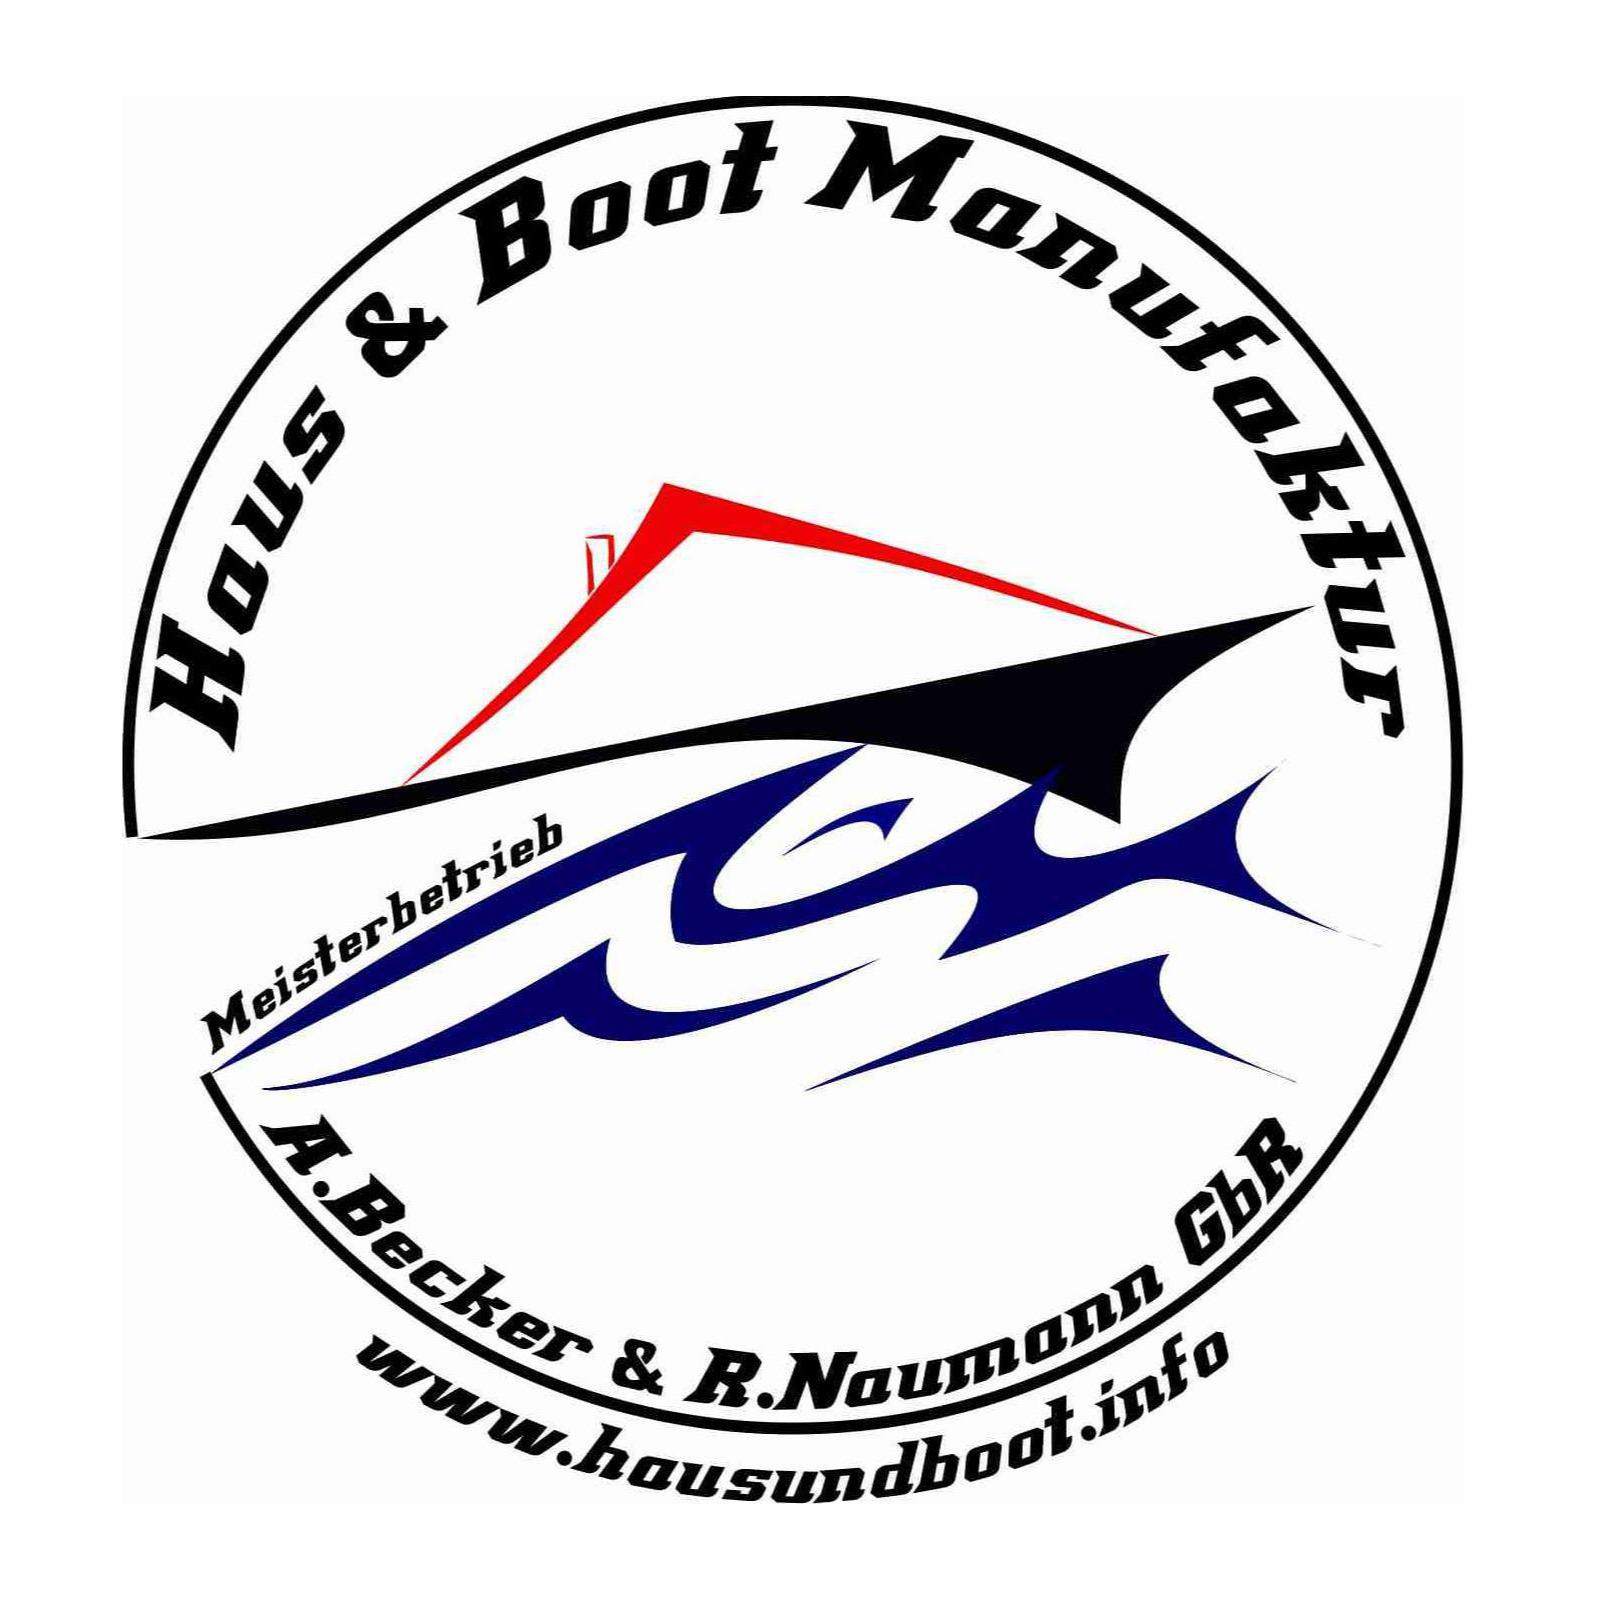 Logo Haus & Boot Manufaktur GbR Ges. Andre Becker u. Robert Naumann